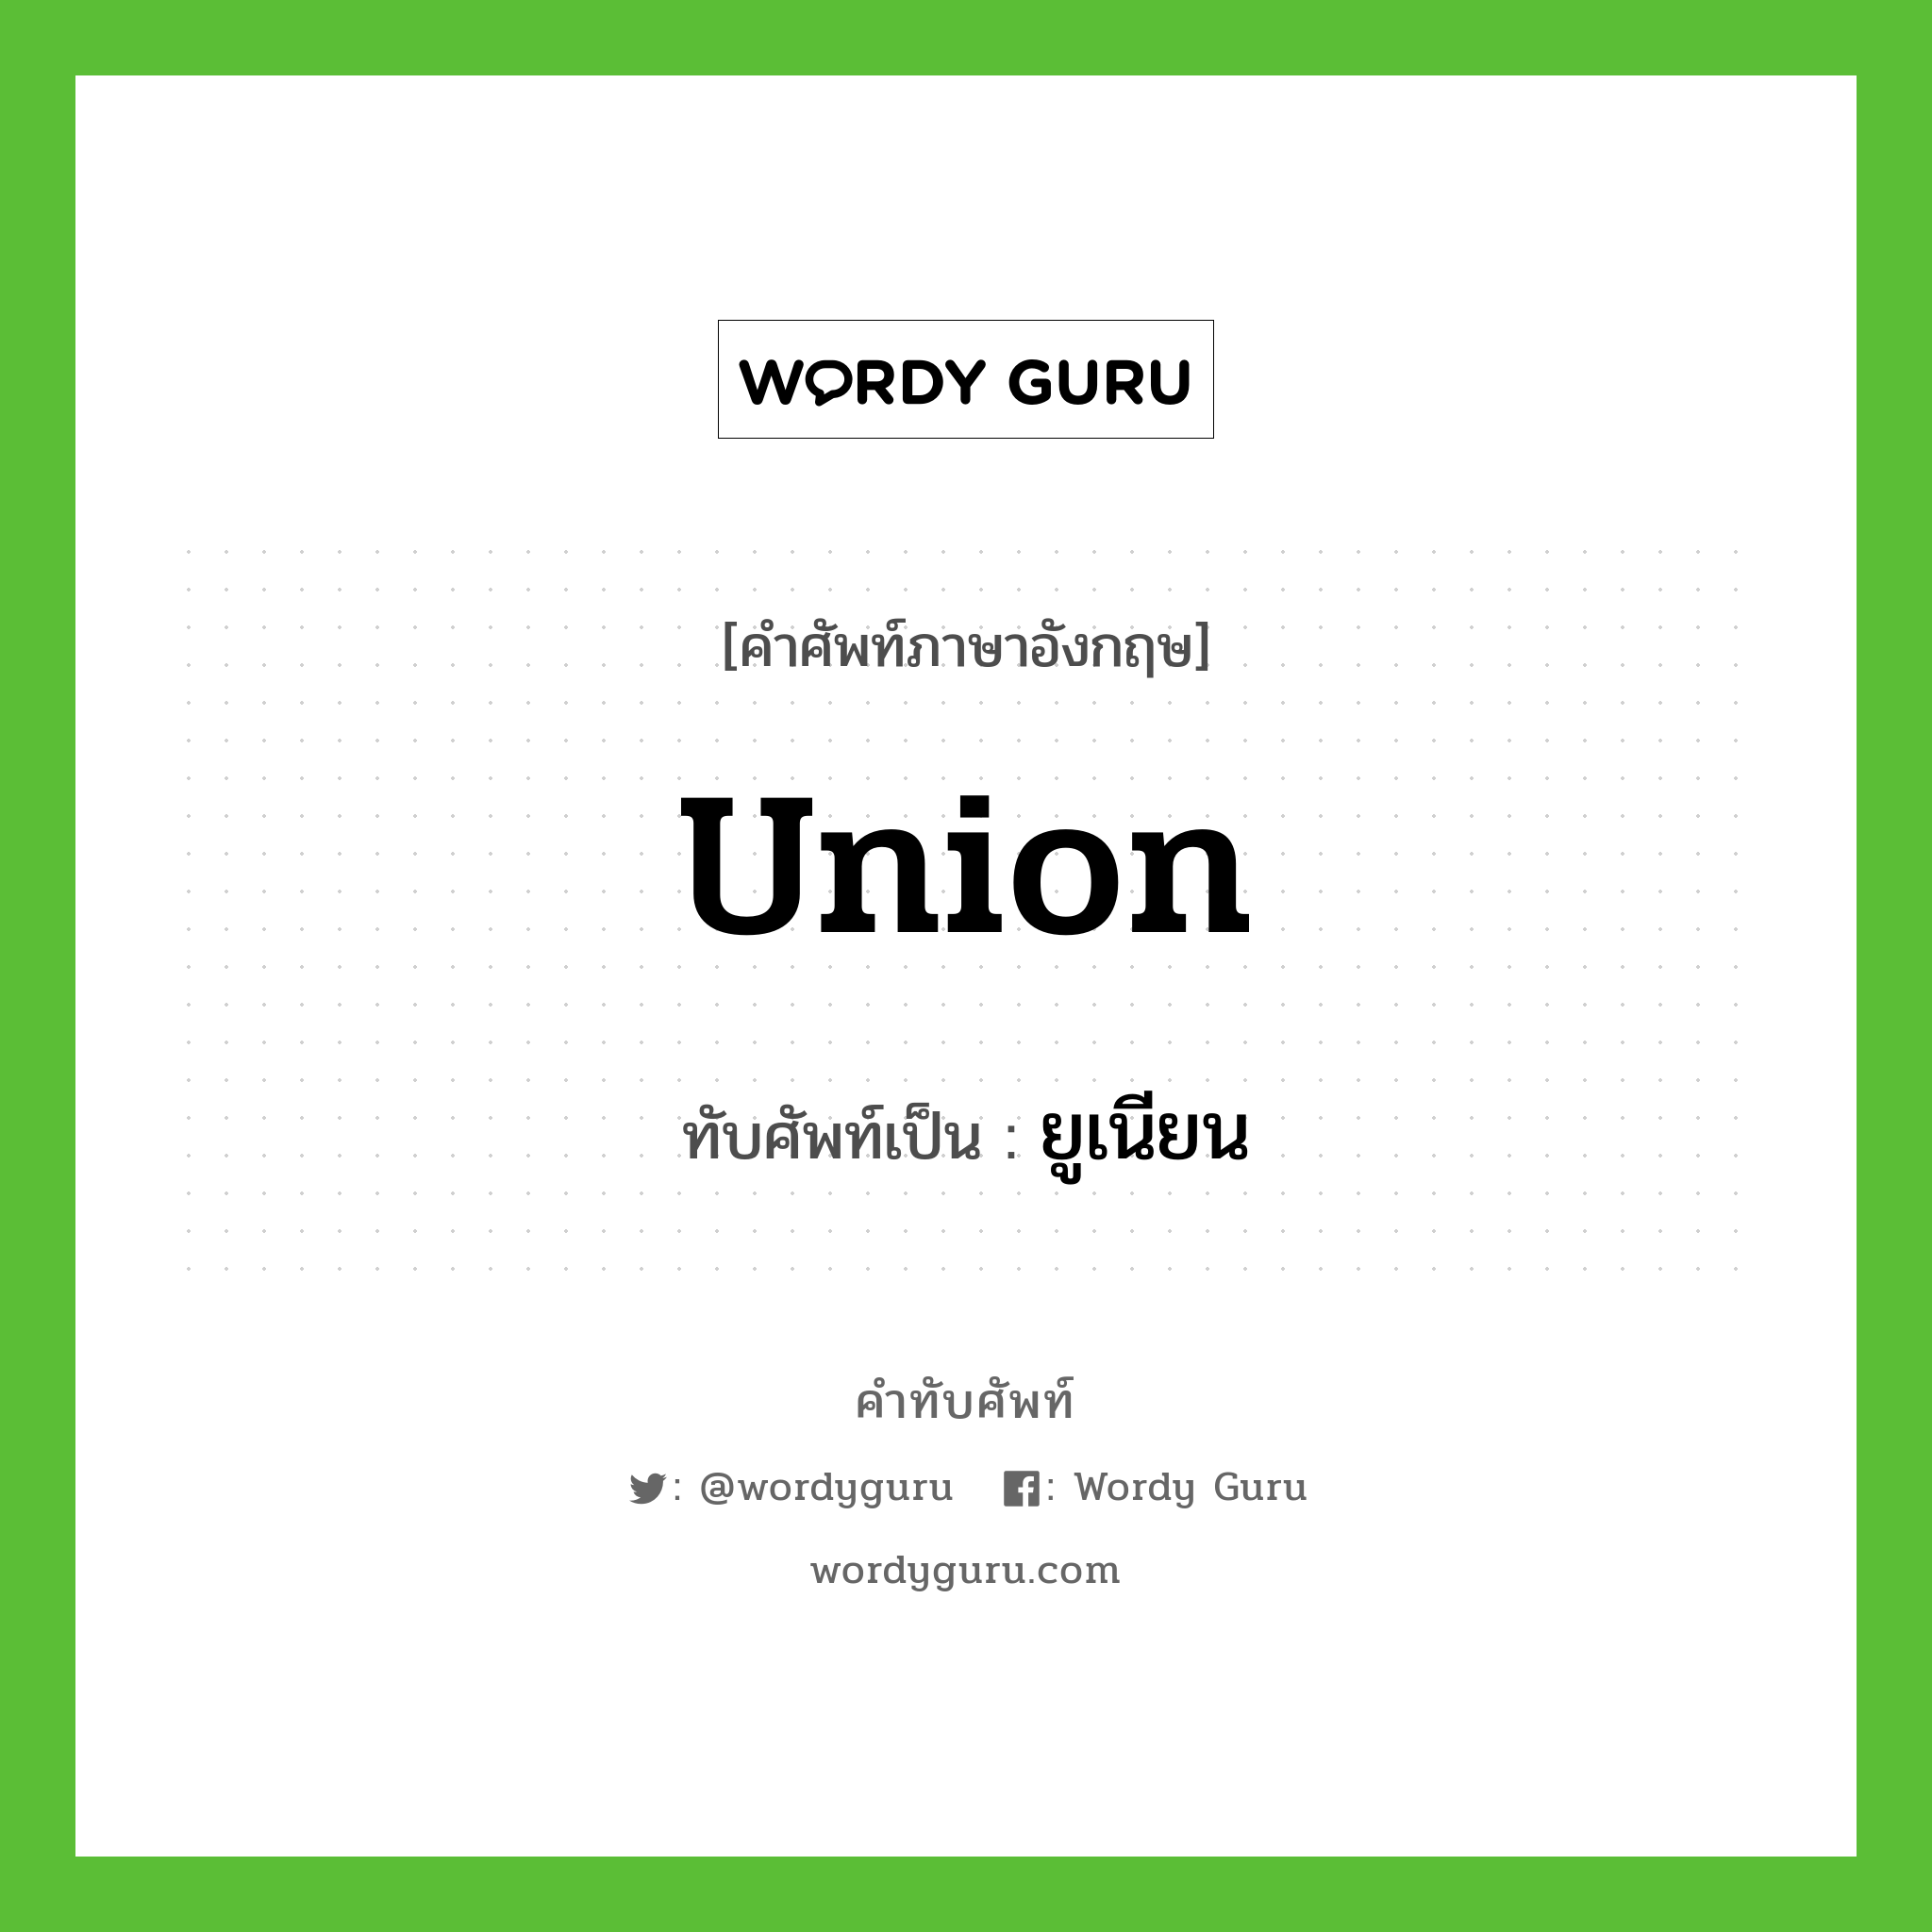 Union เขียนเป็นคำไทยว่าอะไร?, คำศัพท์ภาษาอังกฤษ Union ทับศัพท์เป็น ยูเนียน